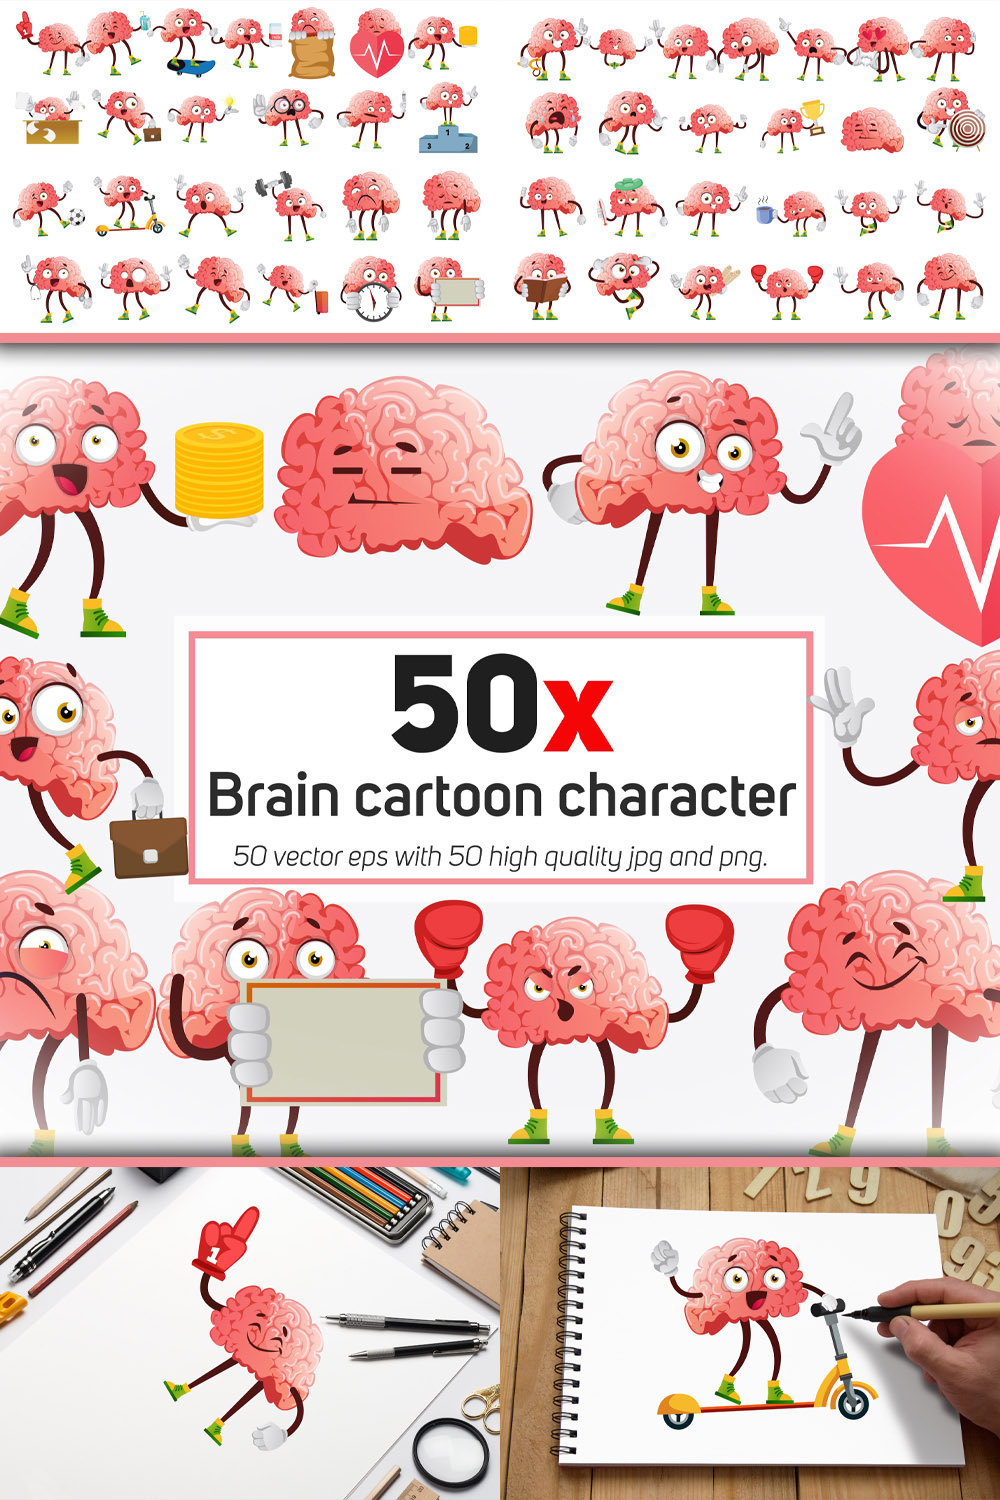 Brain cartoon character collection illustratio of pinterest.